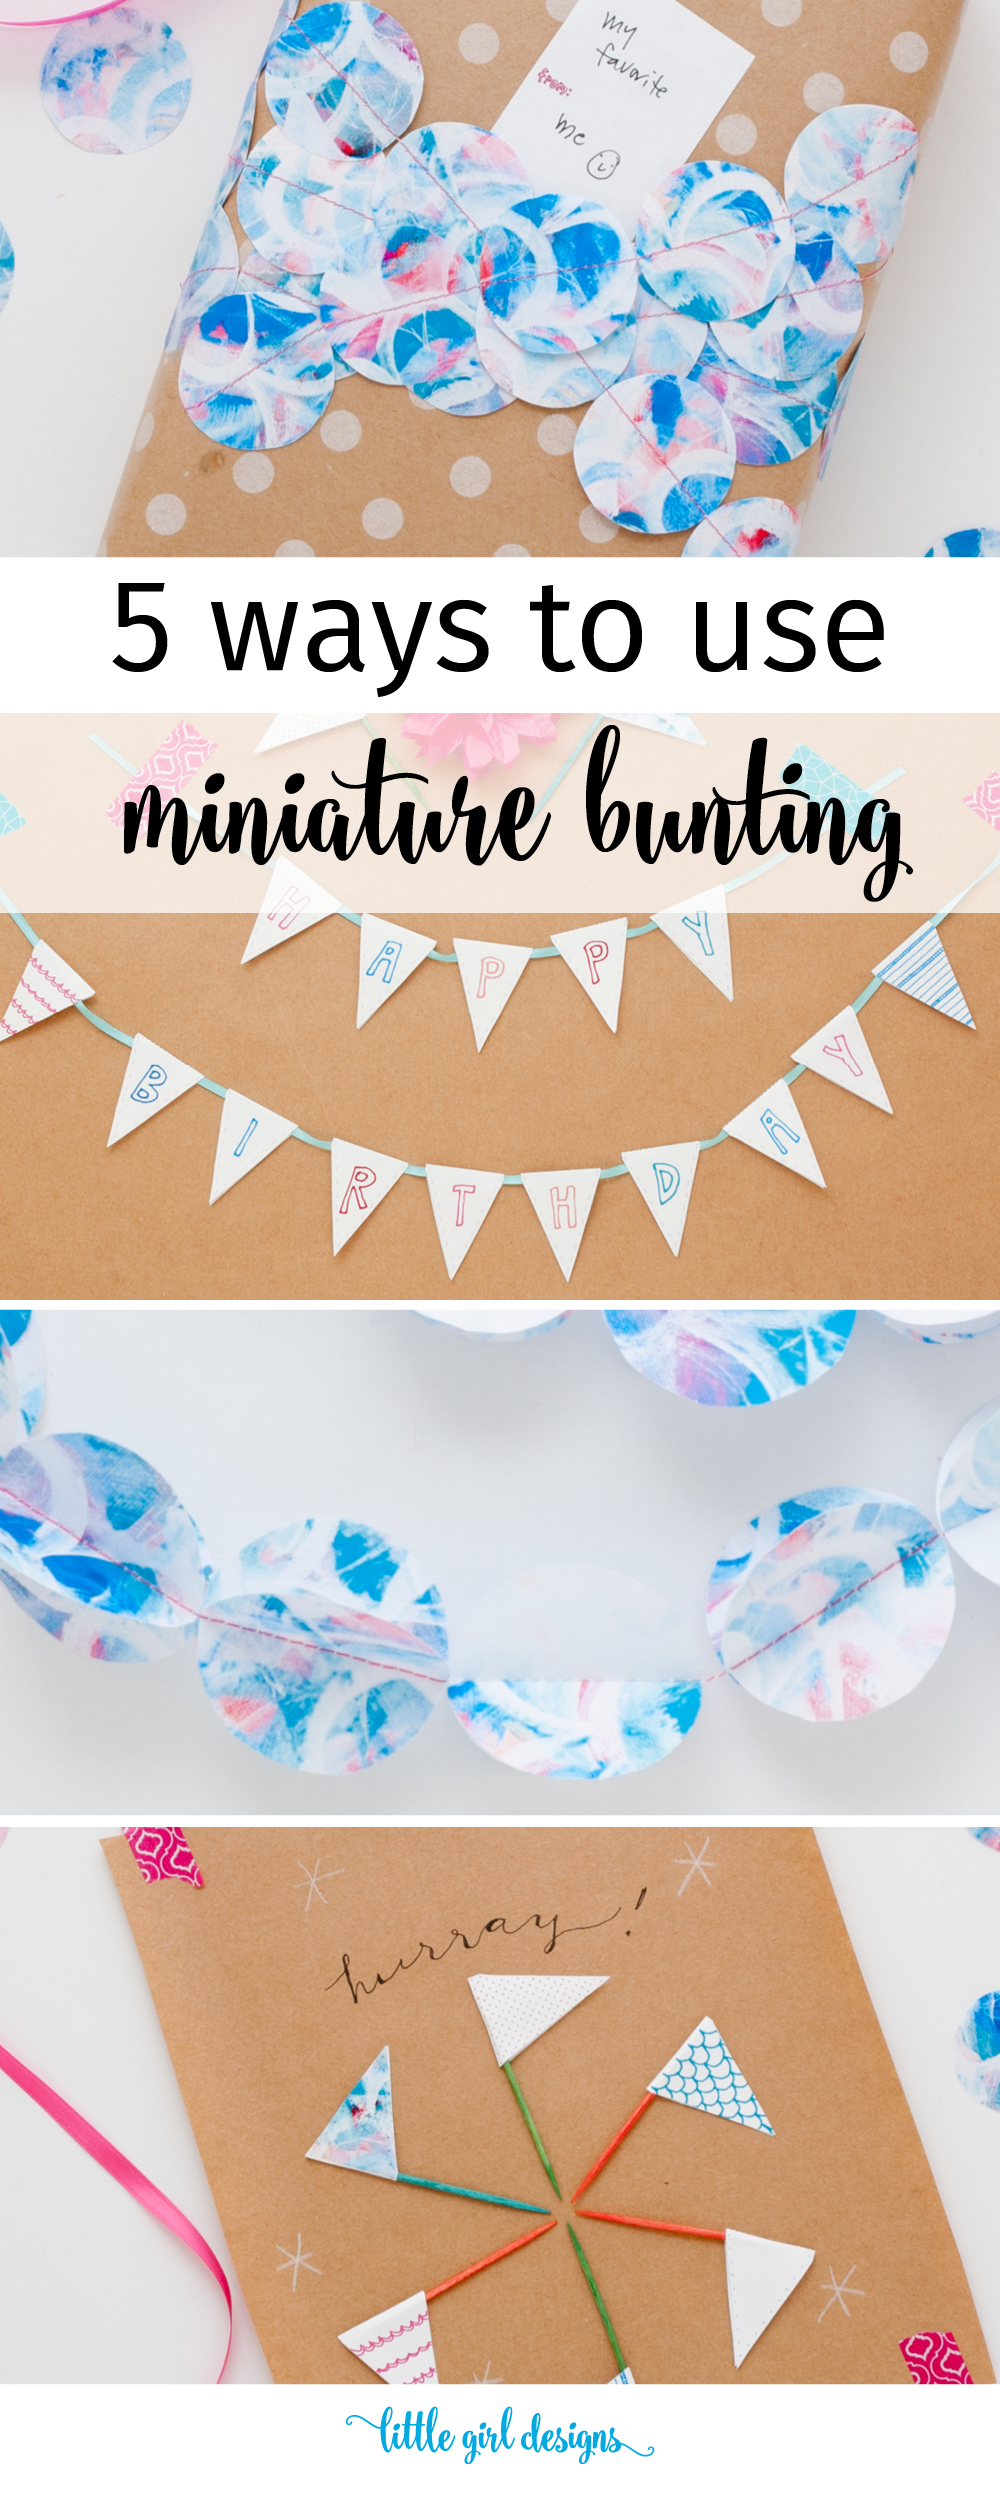 Five Fun Ways to Use Miniature Bunting